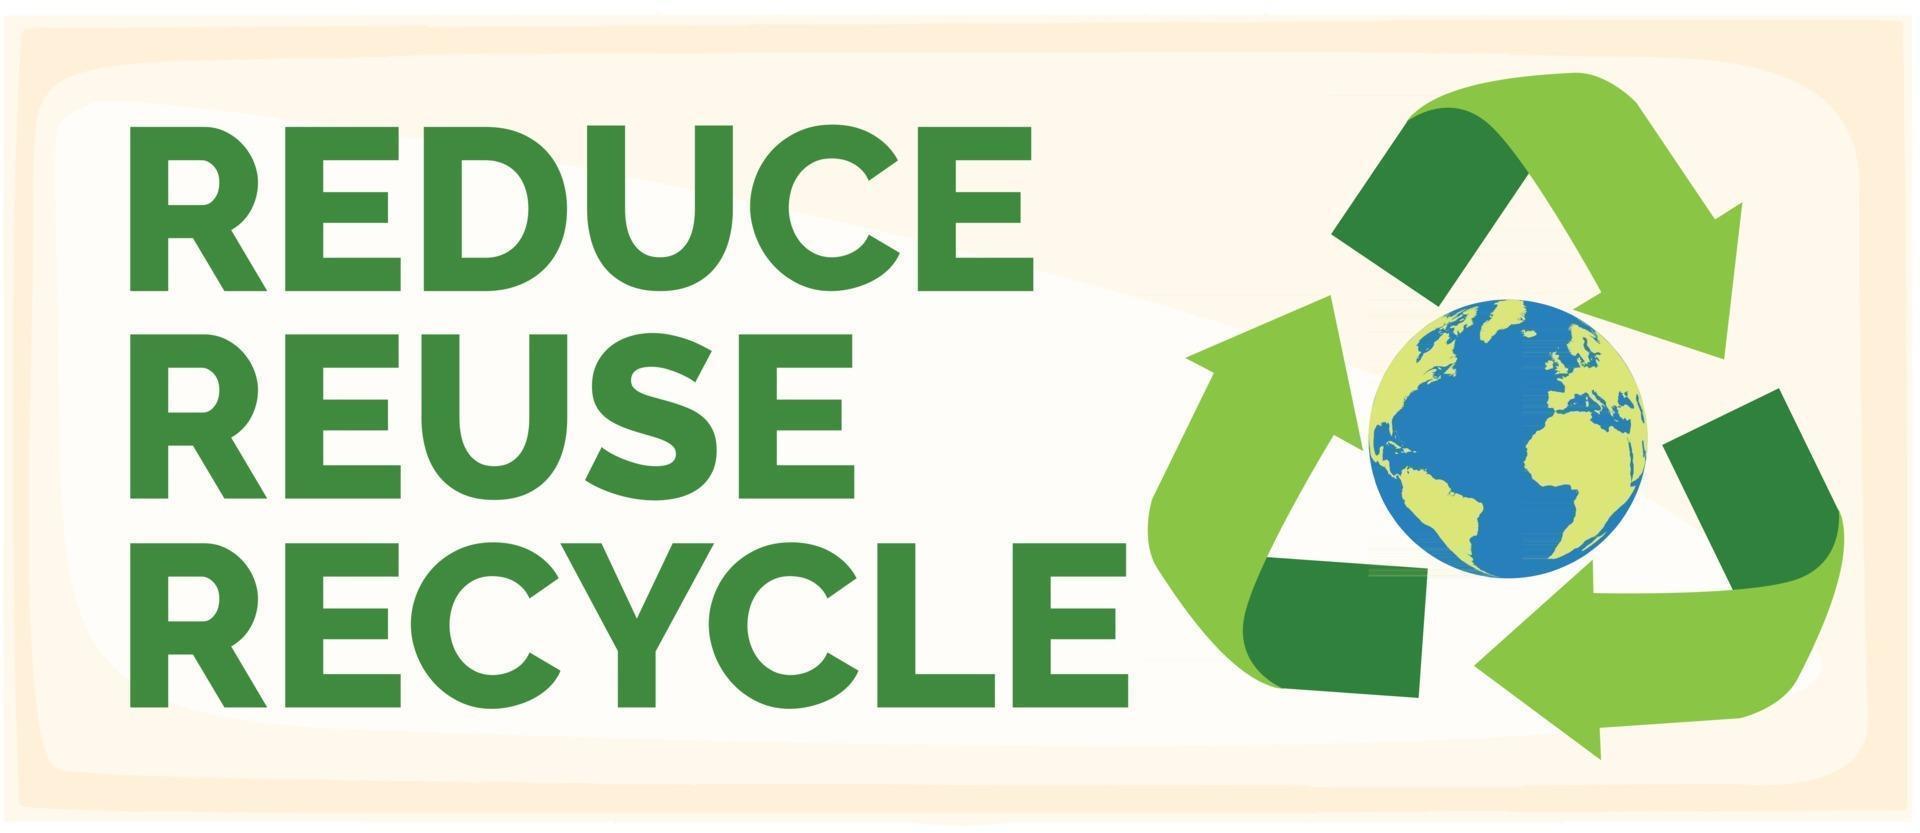 reduzir reduzir reciclar vetor